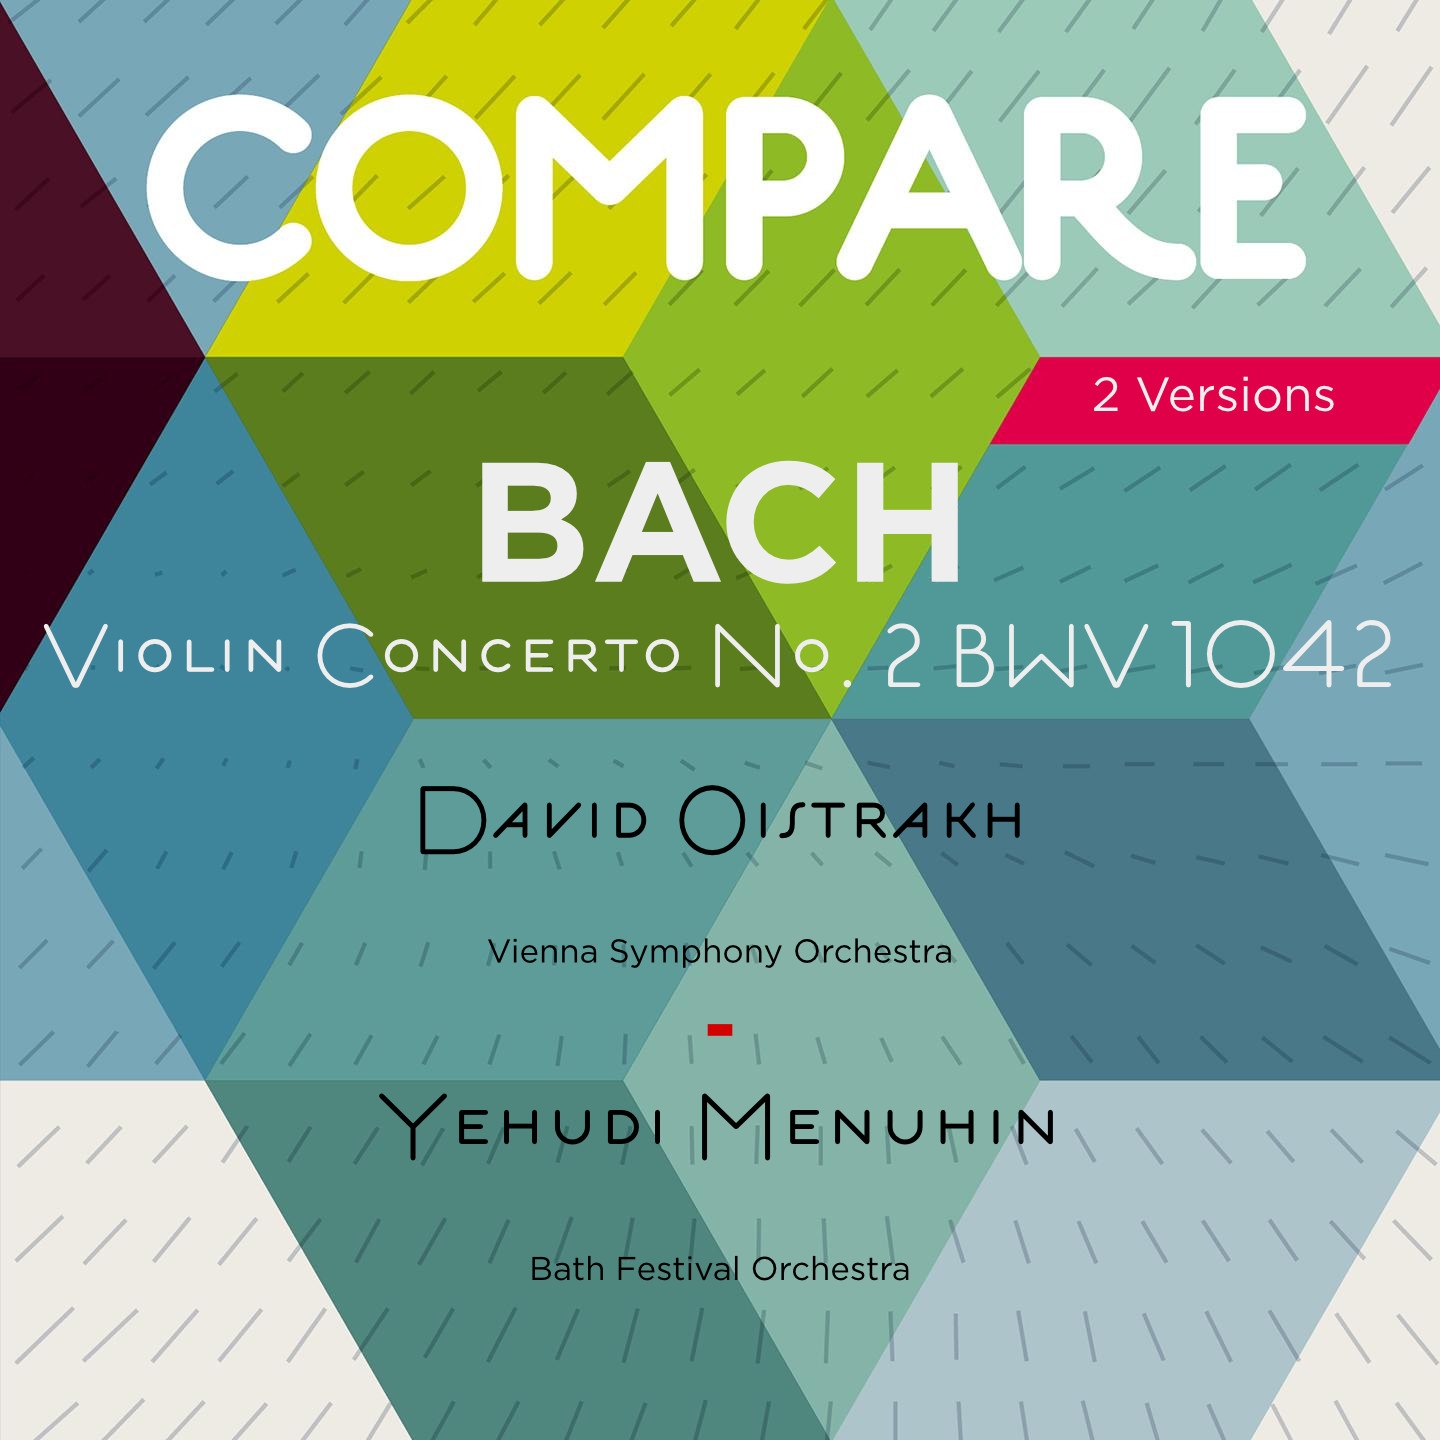 Violin Concerto No. 1 in E Major, BWV 1042: I. Allegro